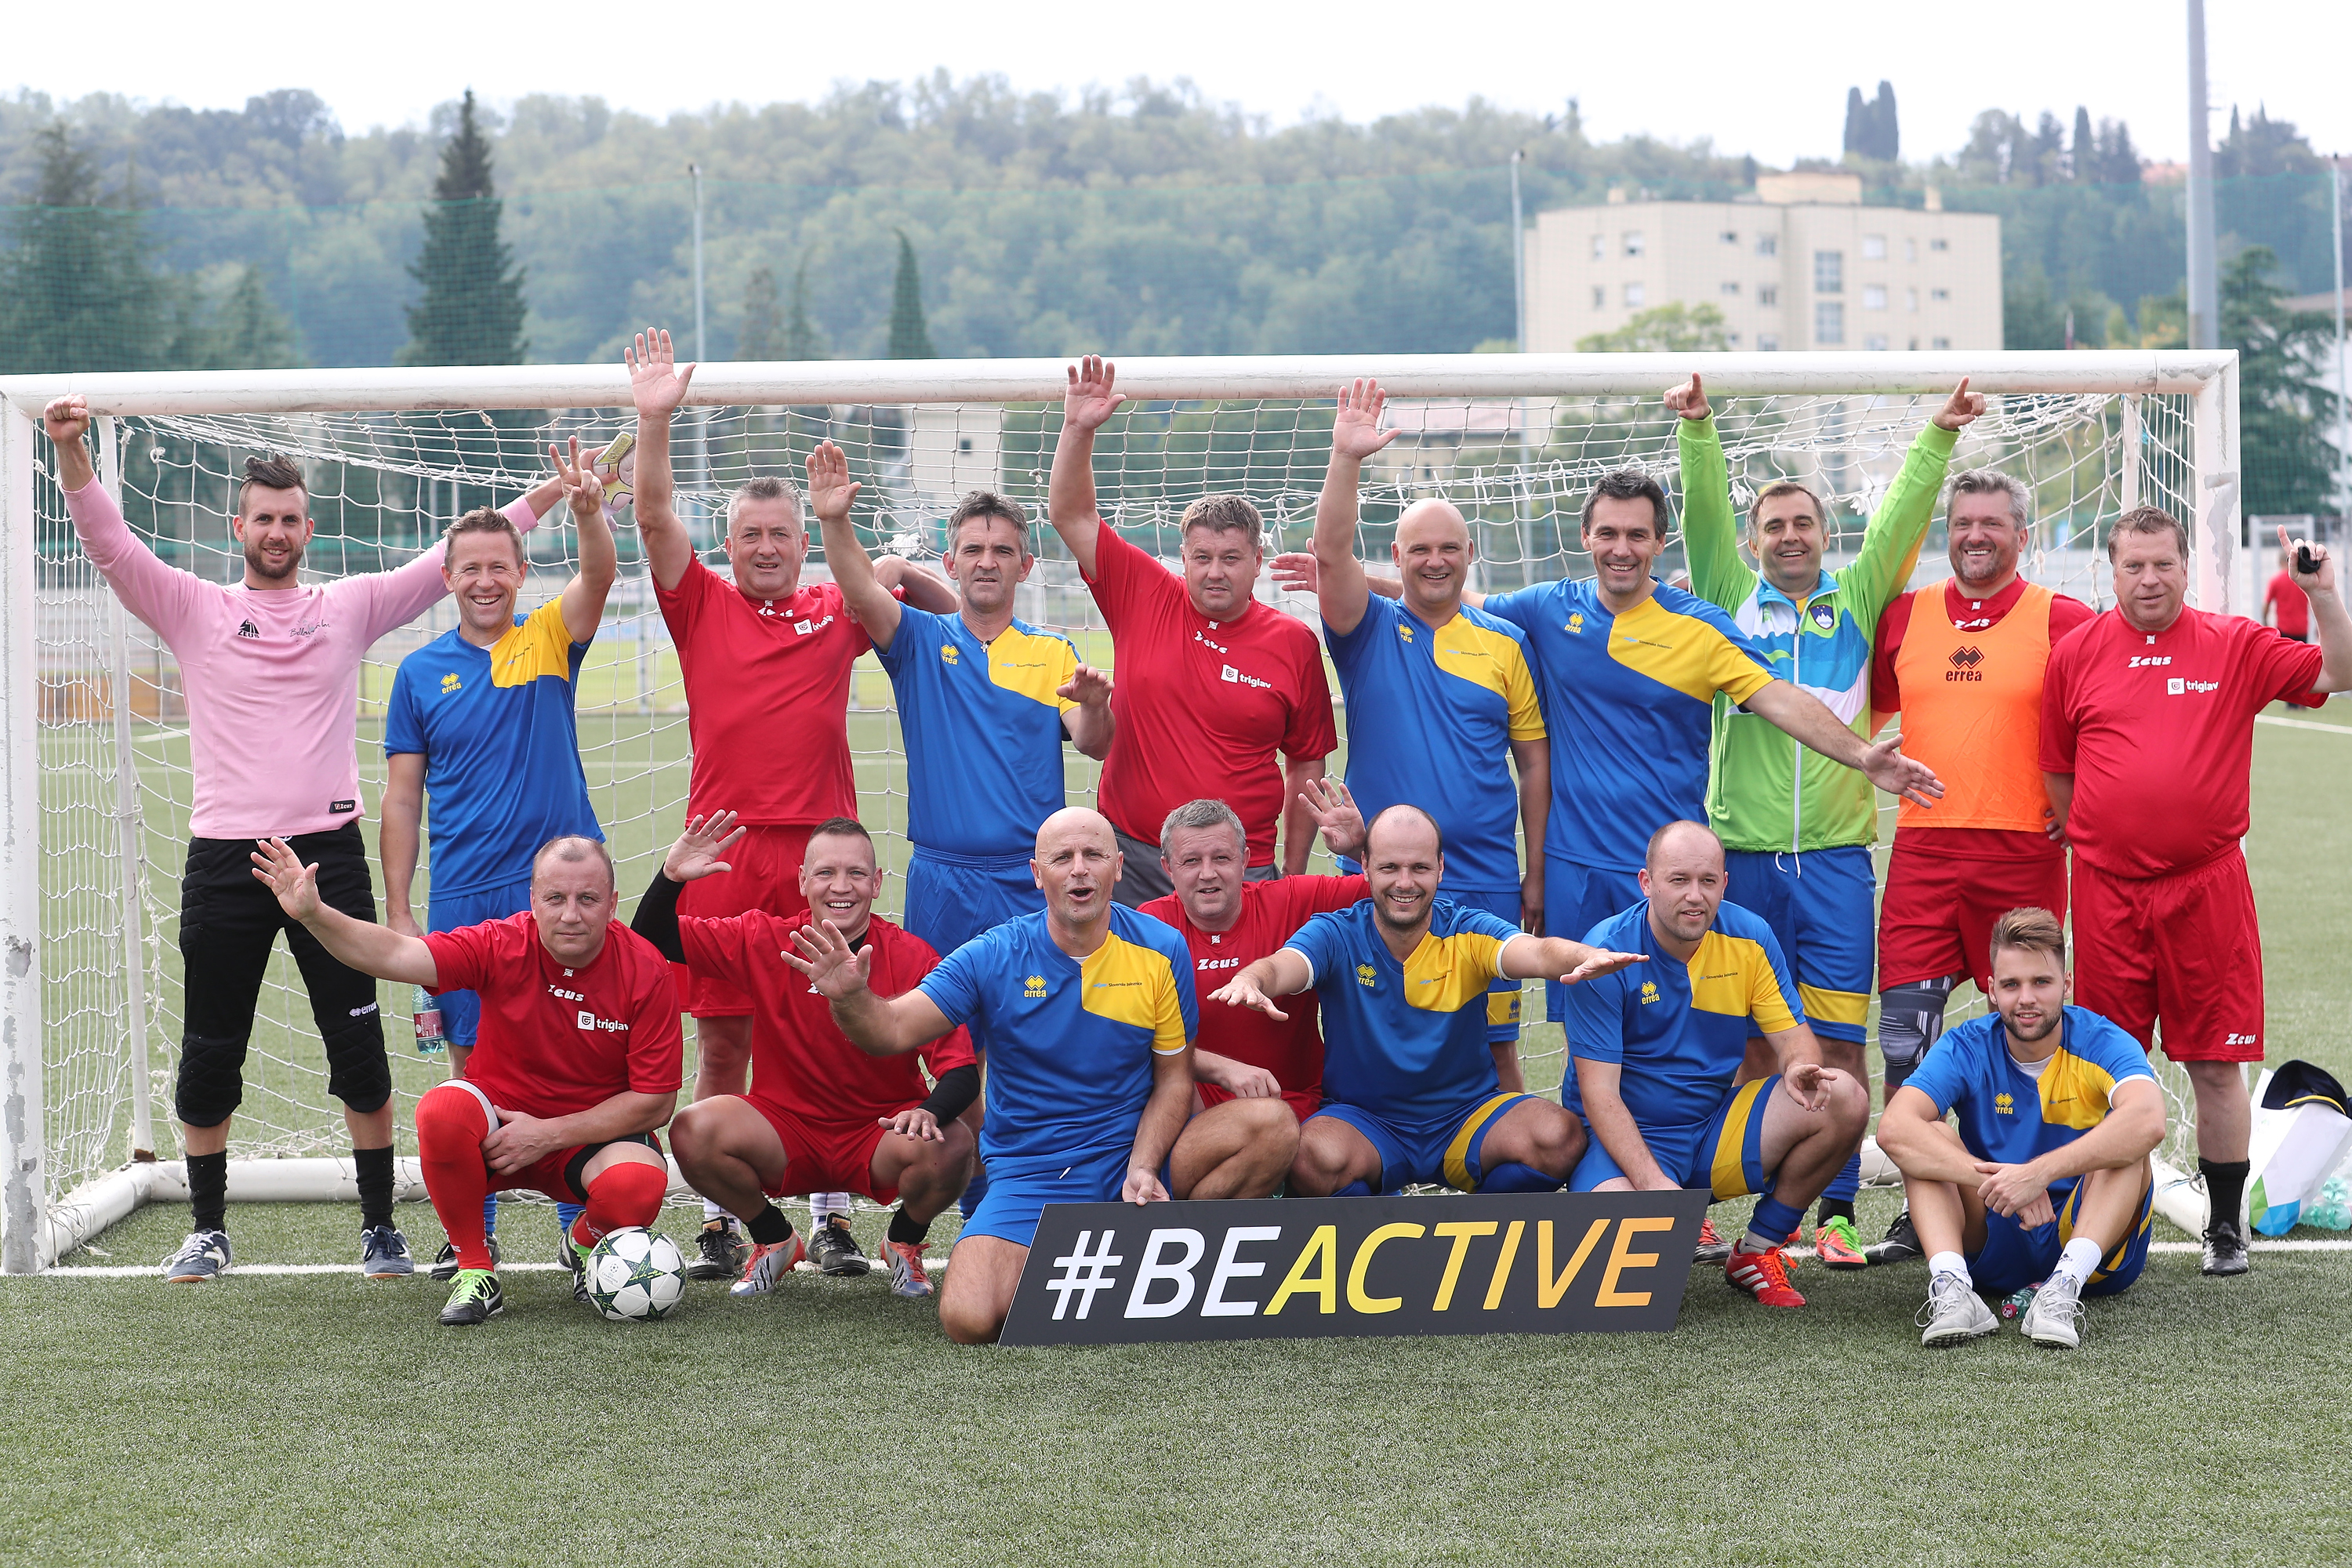 Aktivni odmor v okviru Evropskega tedna športa #BeActive